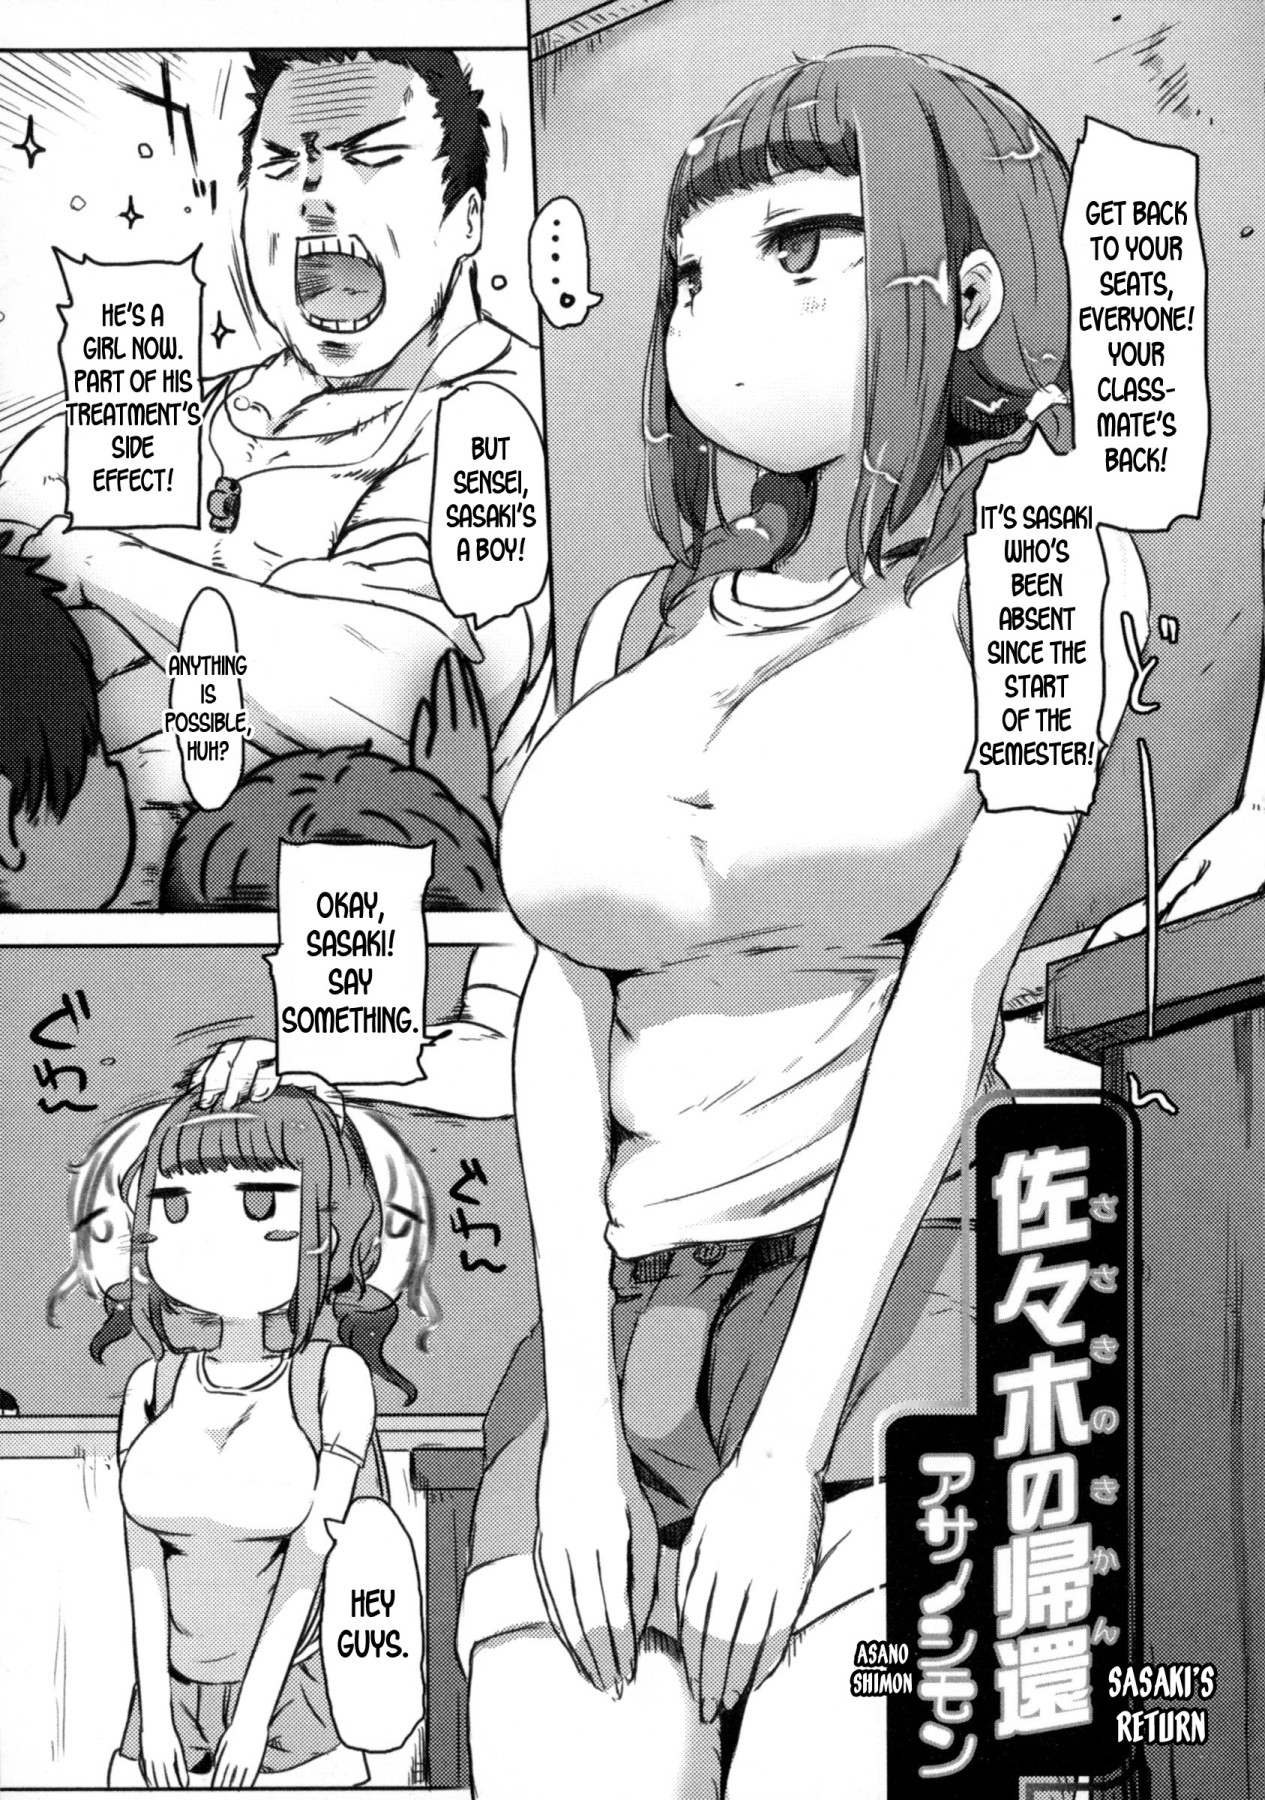 Hentai Manga Comic-Sasaki's Return-Read-1